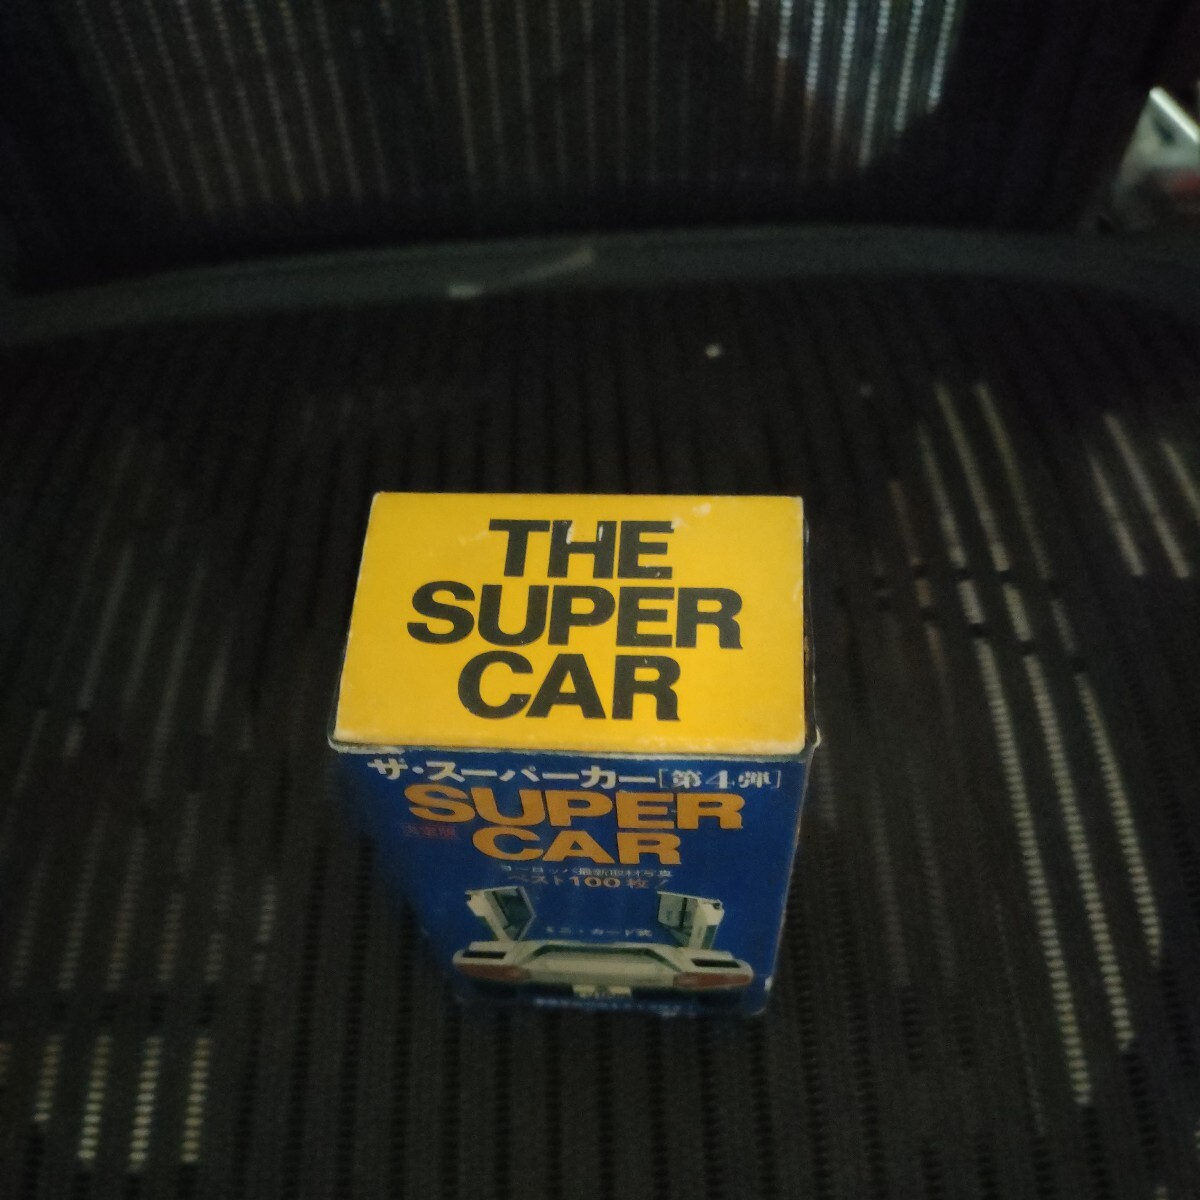  The суперкар ( no. 4.)SUPERCAR лучший 100 листов миникар do тип Showa 52 год 11 месяц 29 день первая версия выпуск 